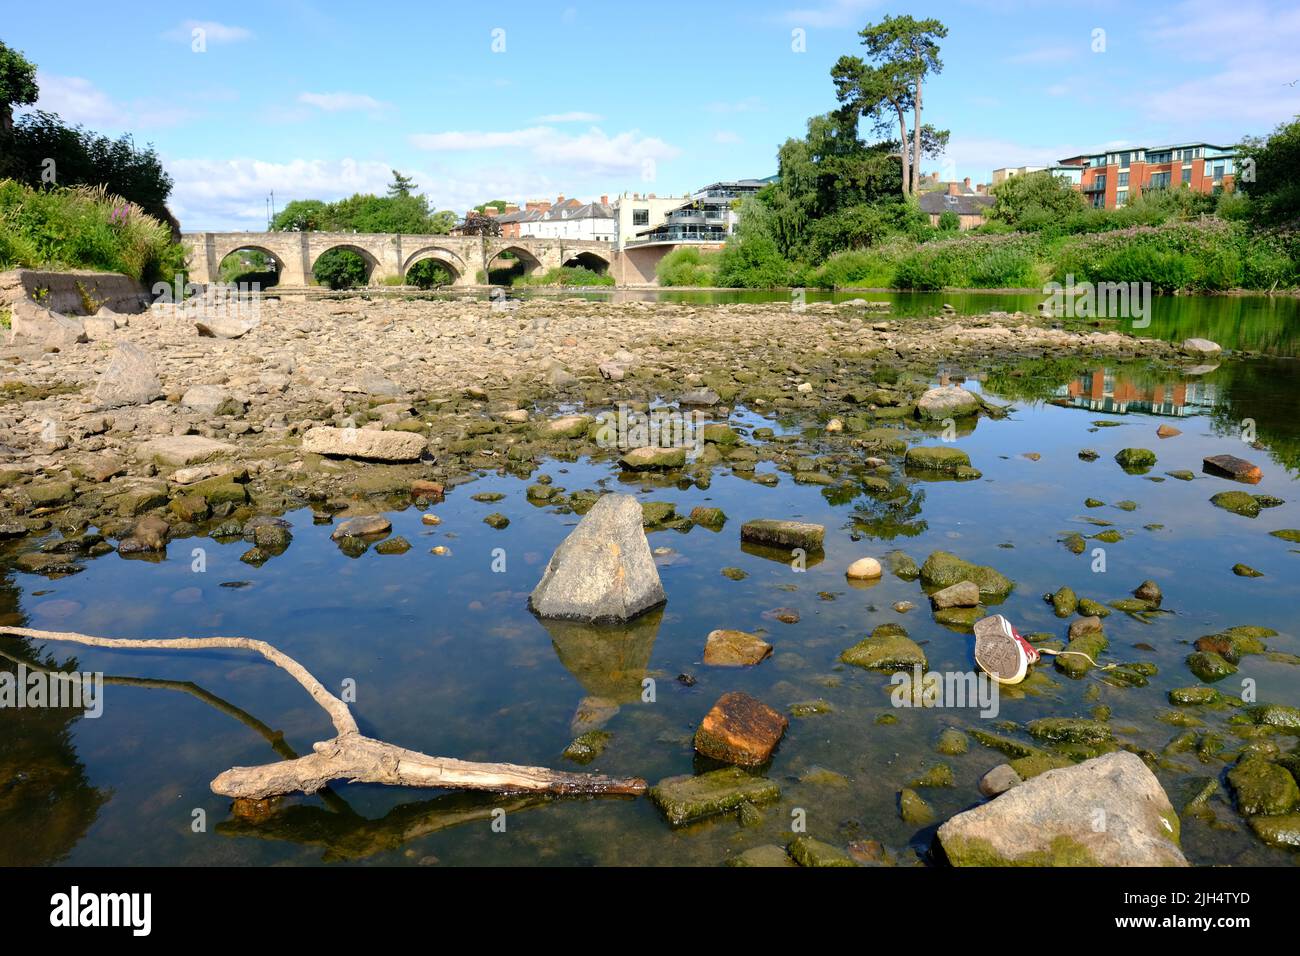 Río Wye, Hereford, Herefordshire, Reino Unido – Viernes 15th de julio de 2022 – Tiempo en el Reino Unido – Una gran parte del lecho del río Wye ha sido expuesta mientras pasa por la ciudad de Hereford. Hoy la lectura del nivel del río es otra vez bajo 10cm en el puente Old Wye en Hereford. La Agencia de Medio Ambiente ha advertido que la temperatura del agua en el Wye supera los 20C, lo que tendrá un gran impacto en los peces y el crecimiento de algas en el río. El pronóstico del tiempo es para calor extremo sin pronóstico de lluvia local. Foto Steven May / Alamy Live News Foto de stock